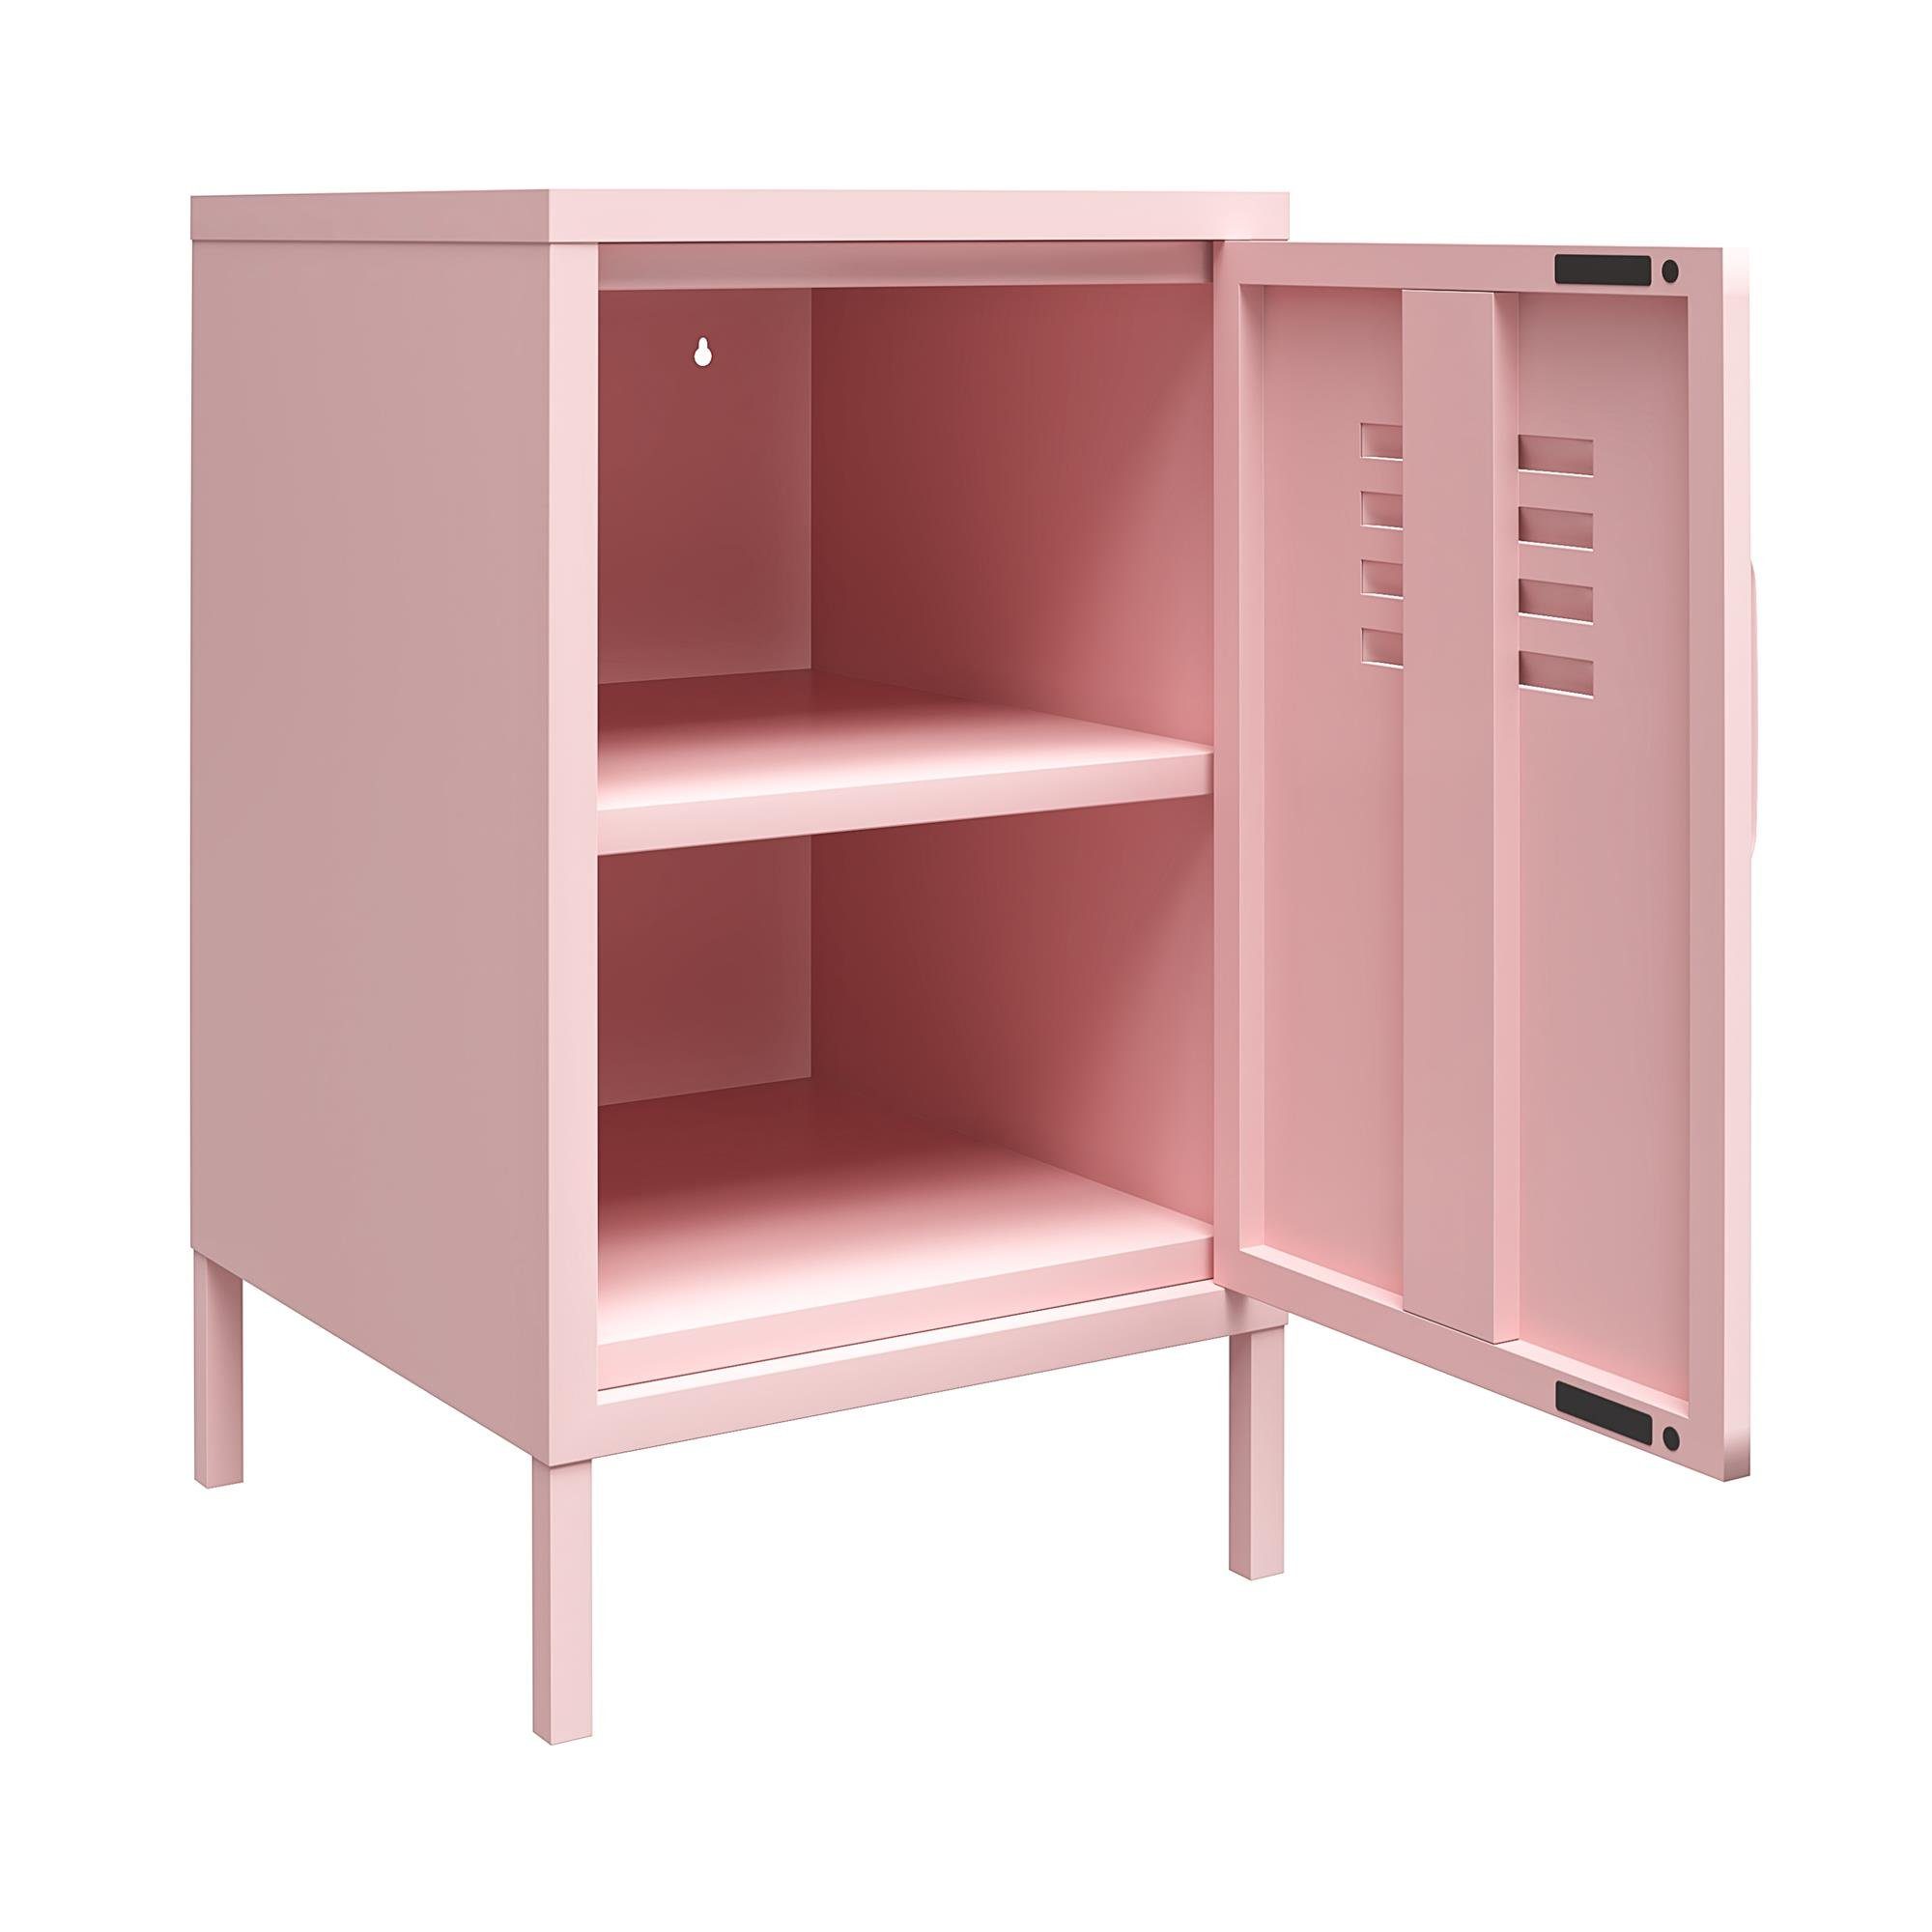 loft24 Nachtschrank Cache Metall Retro-Design Spint-Look, abschließbar, aus pink im